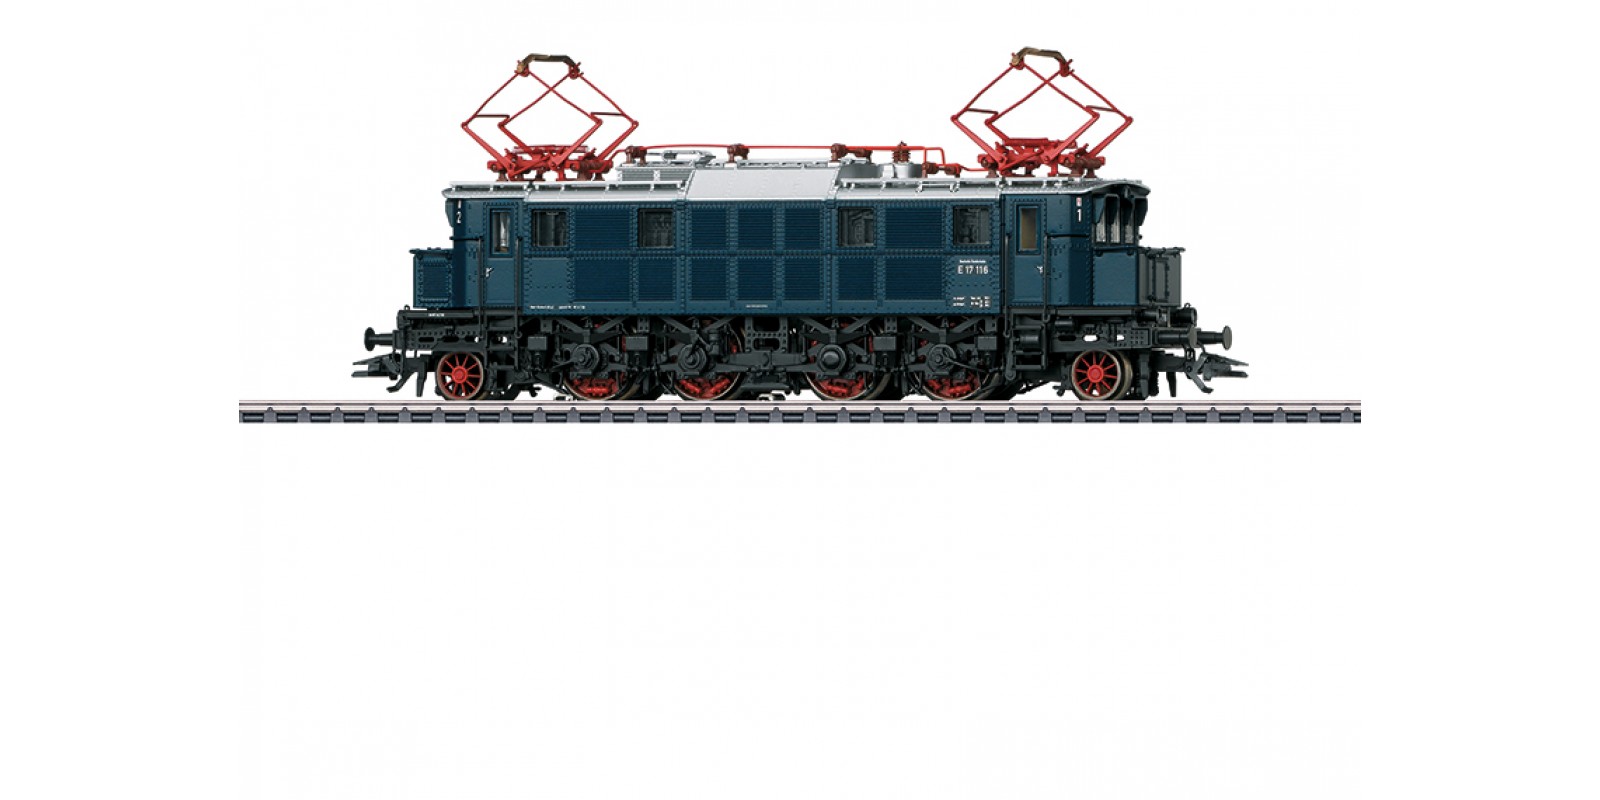 37064 Class E 17 Electric Locomotive